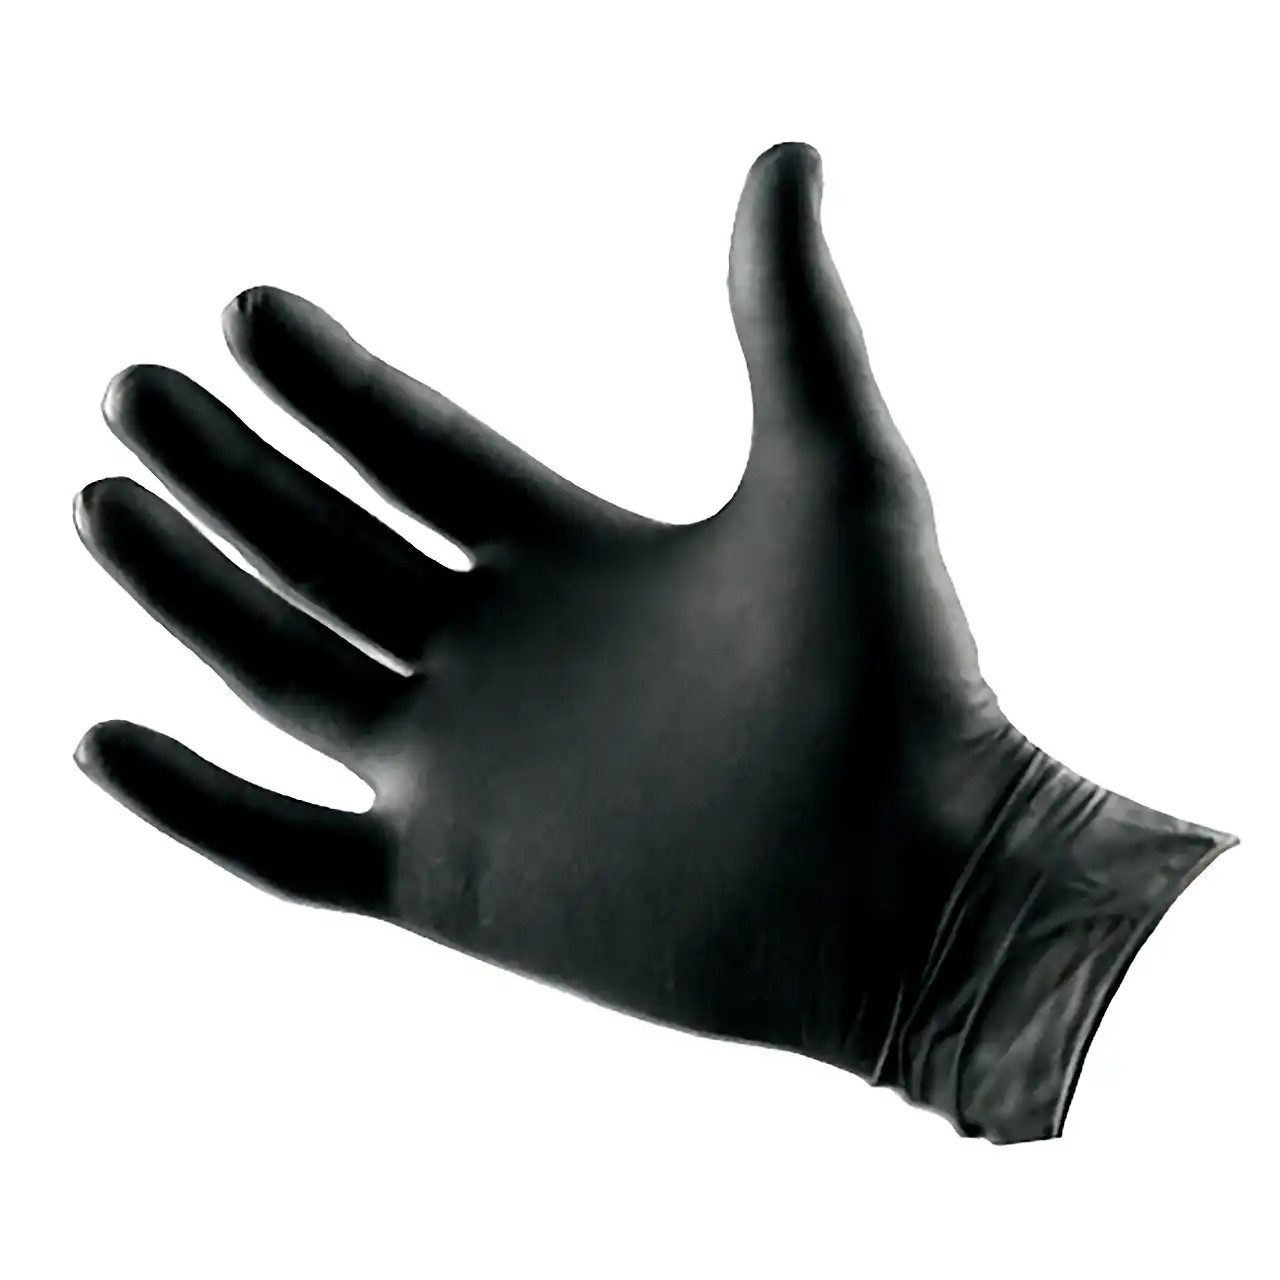 Klingspor Small Black Nitrile Gloves 100pk